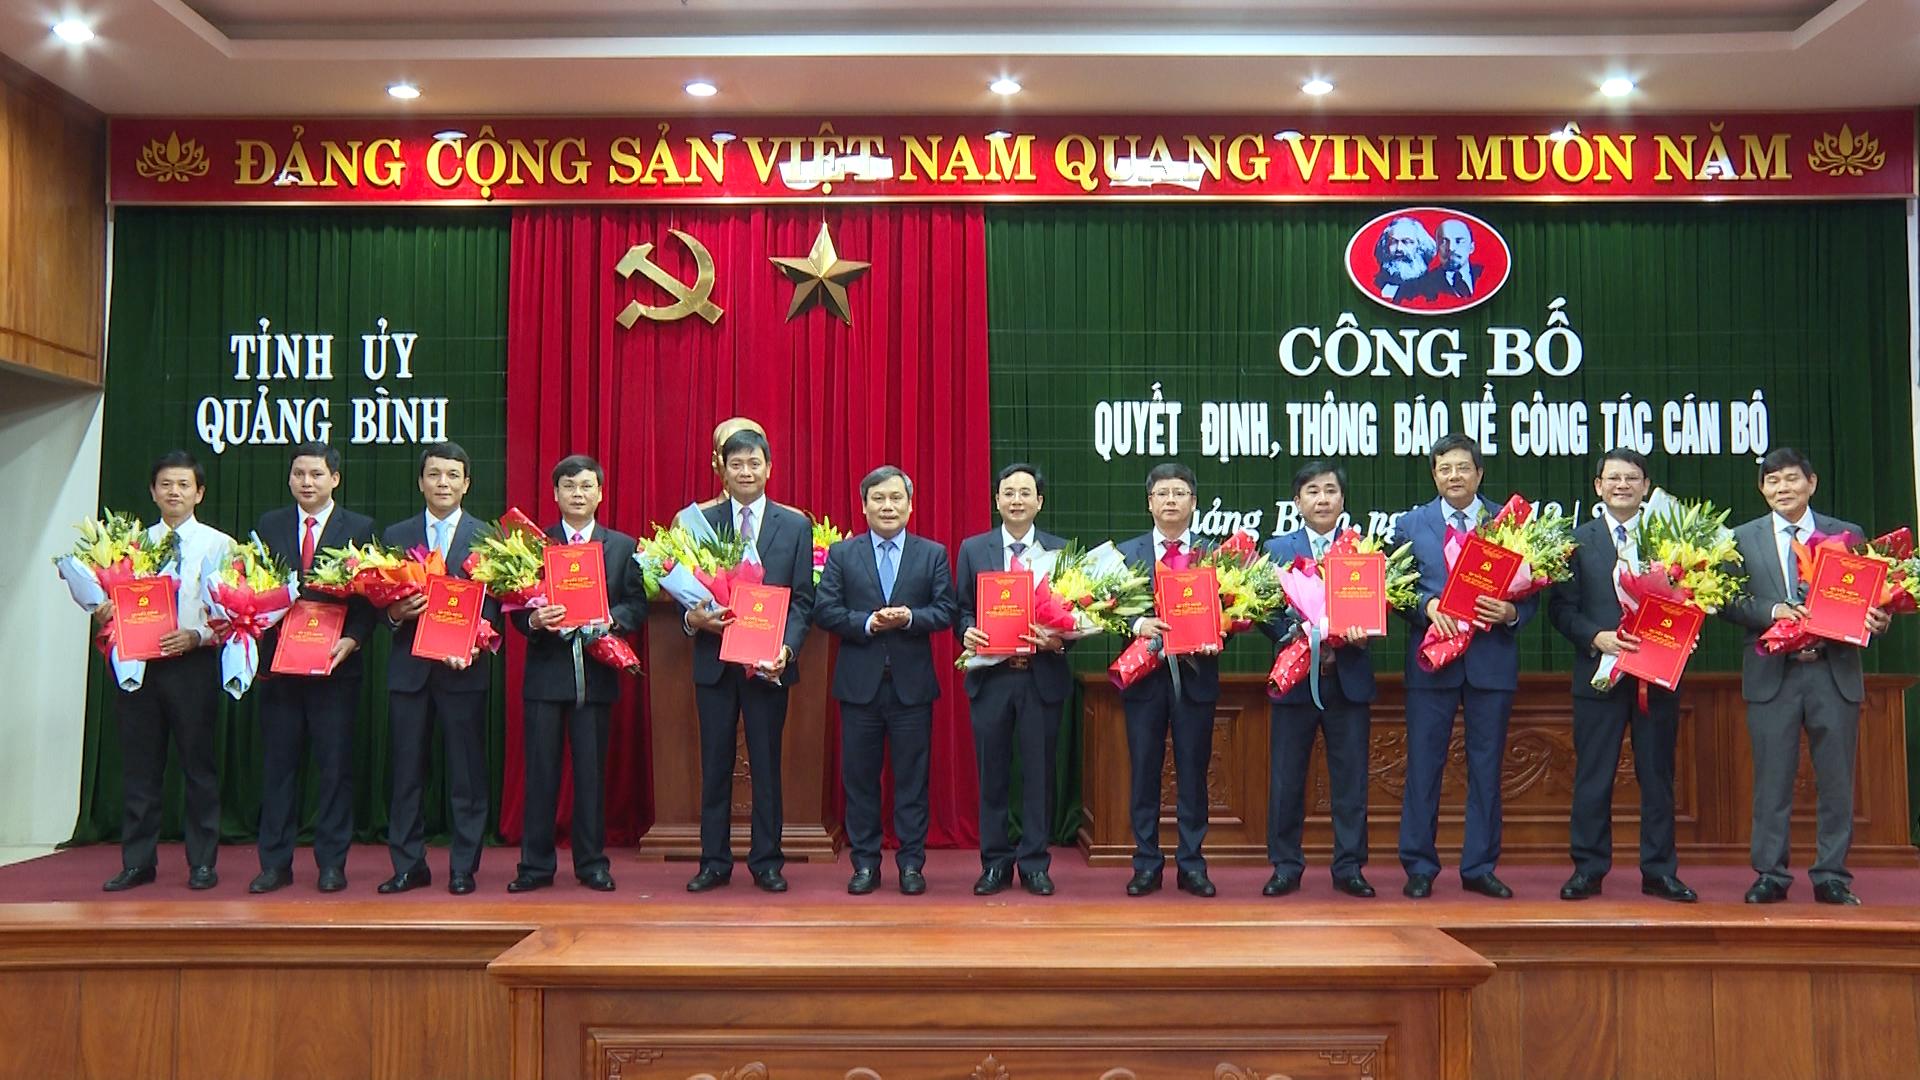 Bí thư Tỉnh ủy Quảng Bình Vũ Đại Thắng trao quyết định và tặng hoa các lãnh đạo Sở, ngành của tỉnh Quảng Bình được điều động, bổ nhiệm